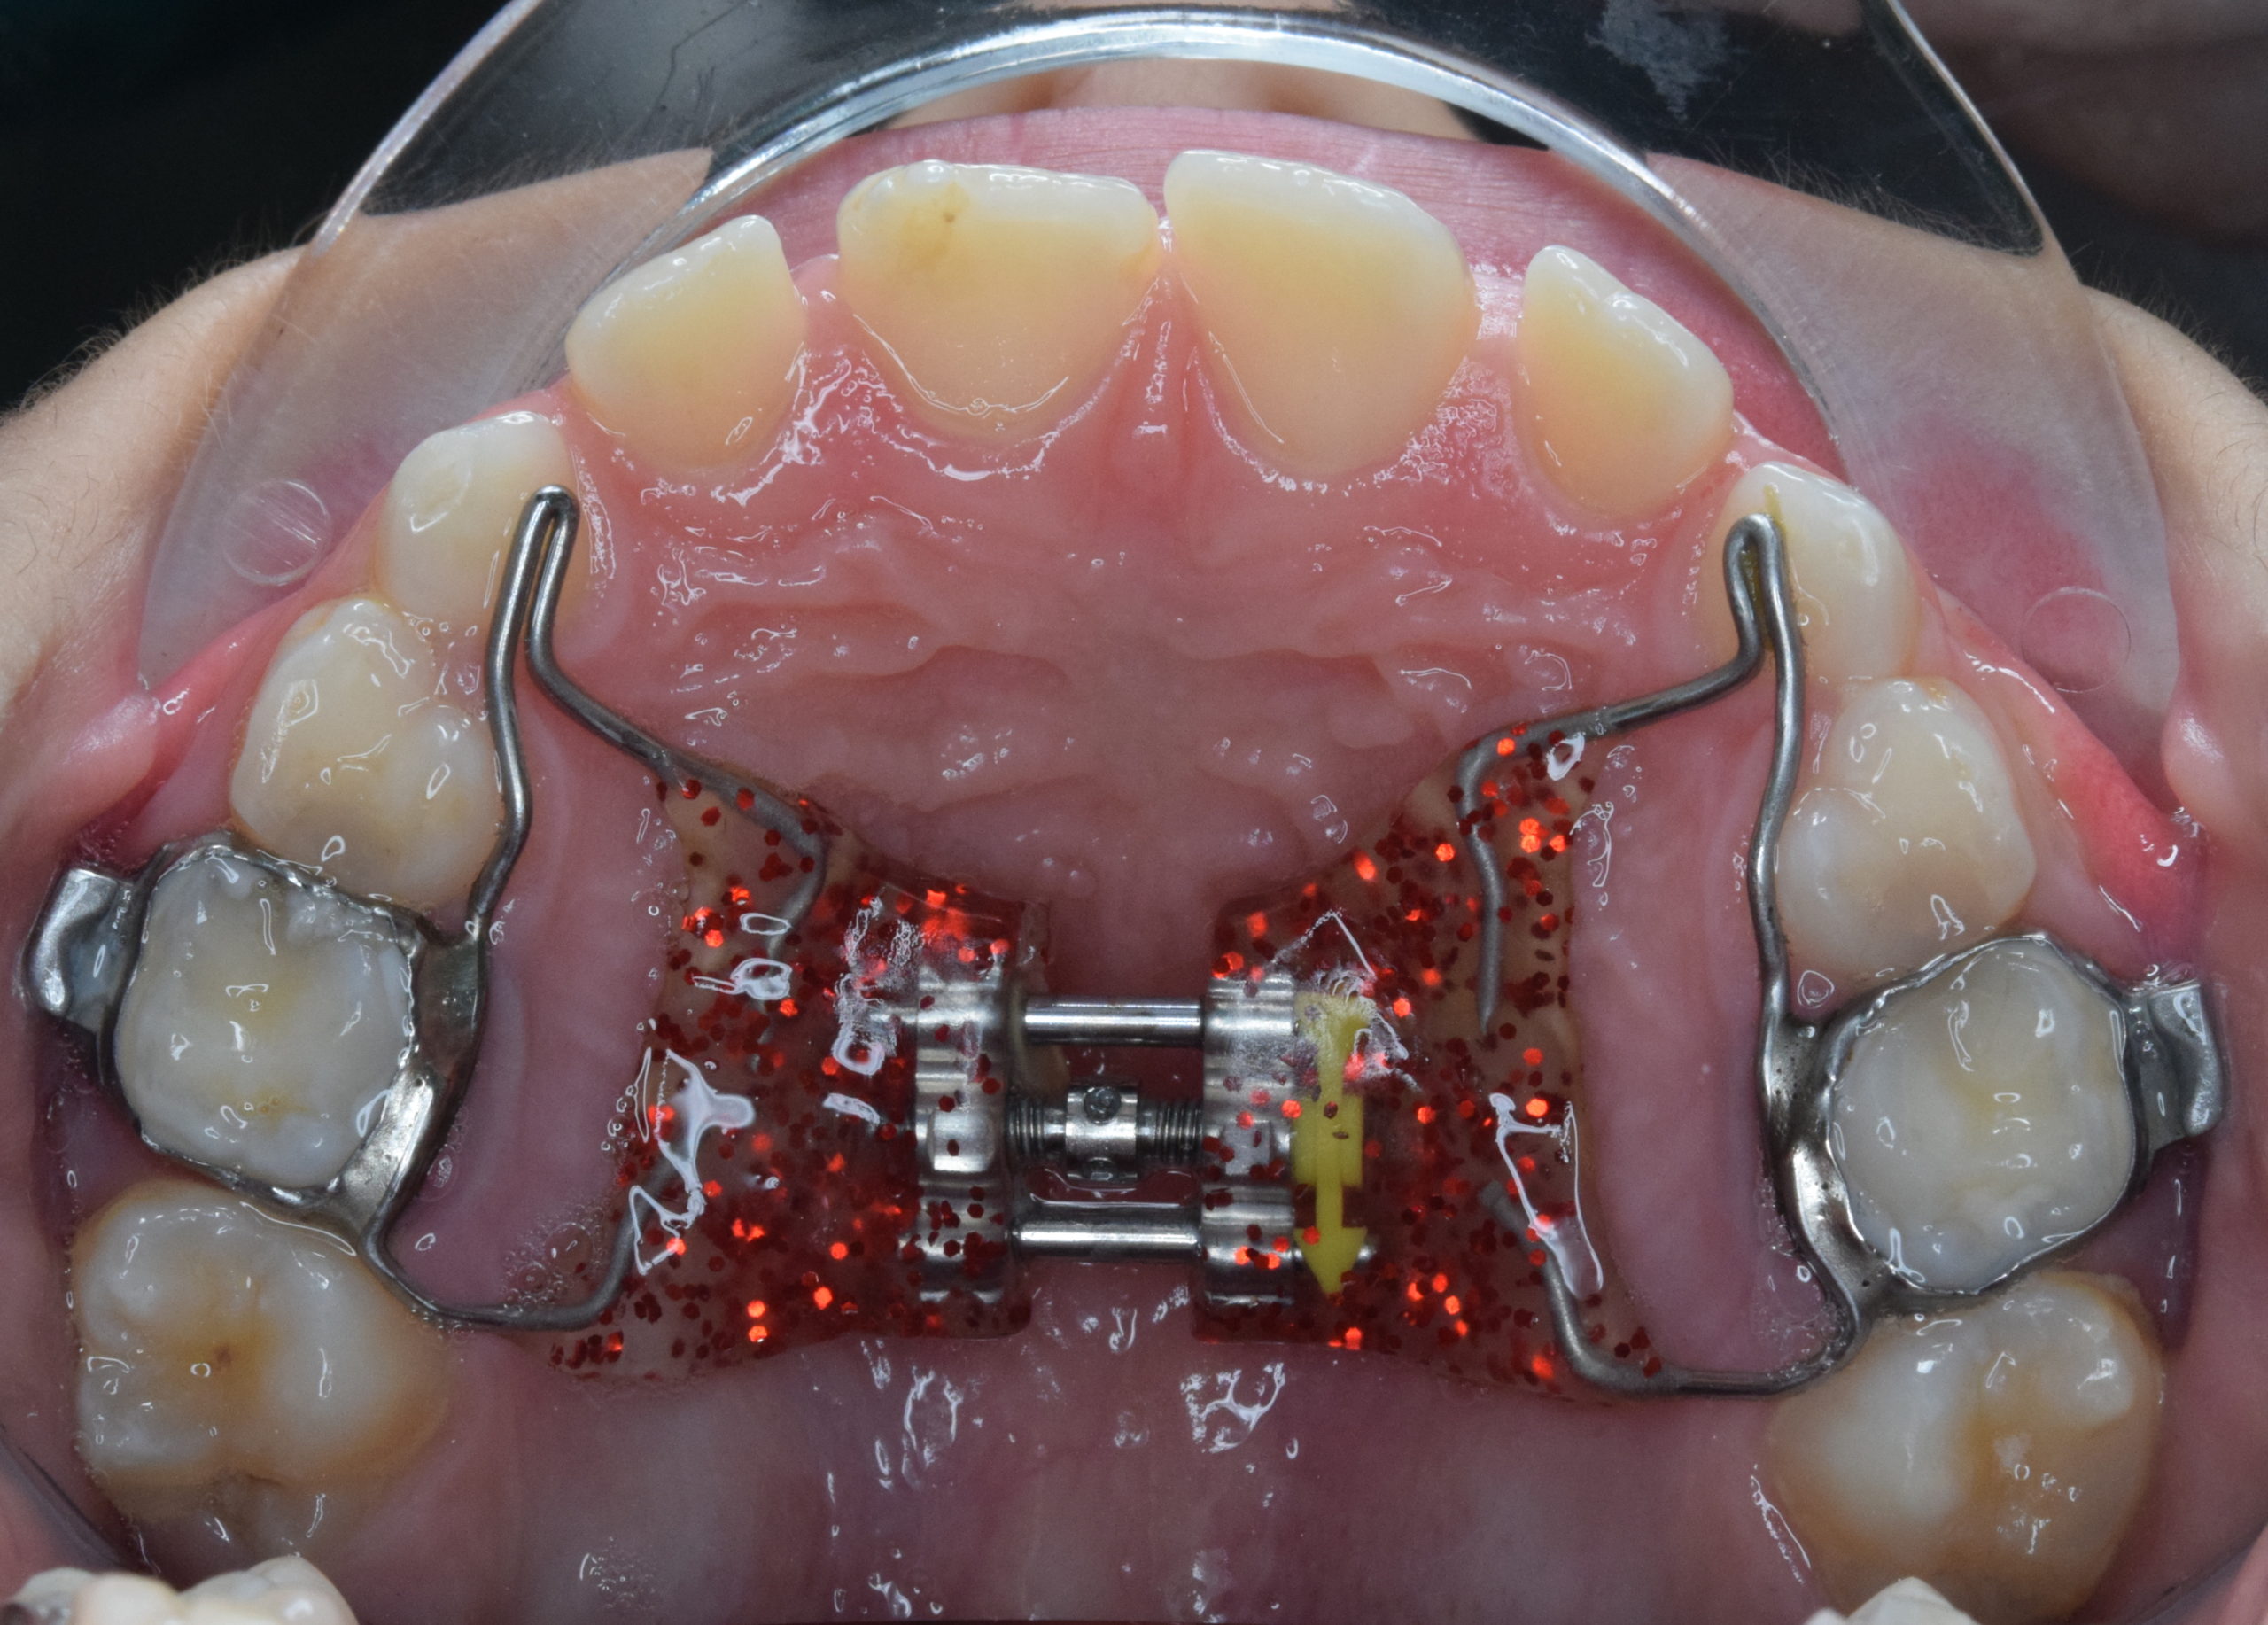 SEN Blu ortodontico per apparecchi ortodontici 